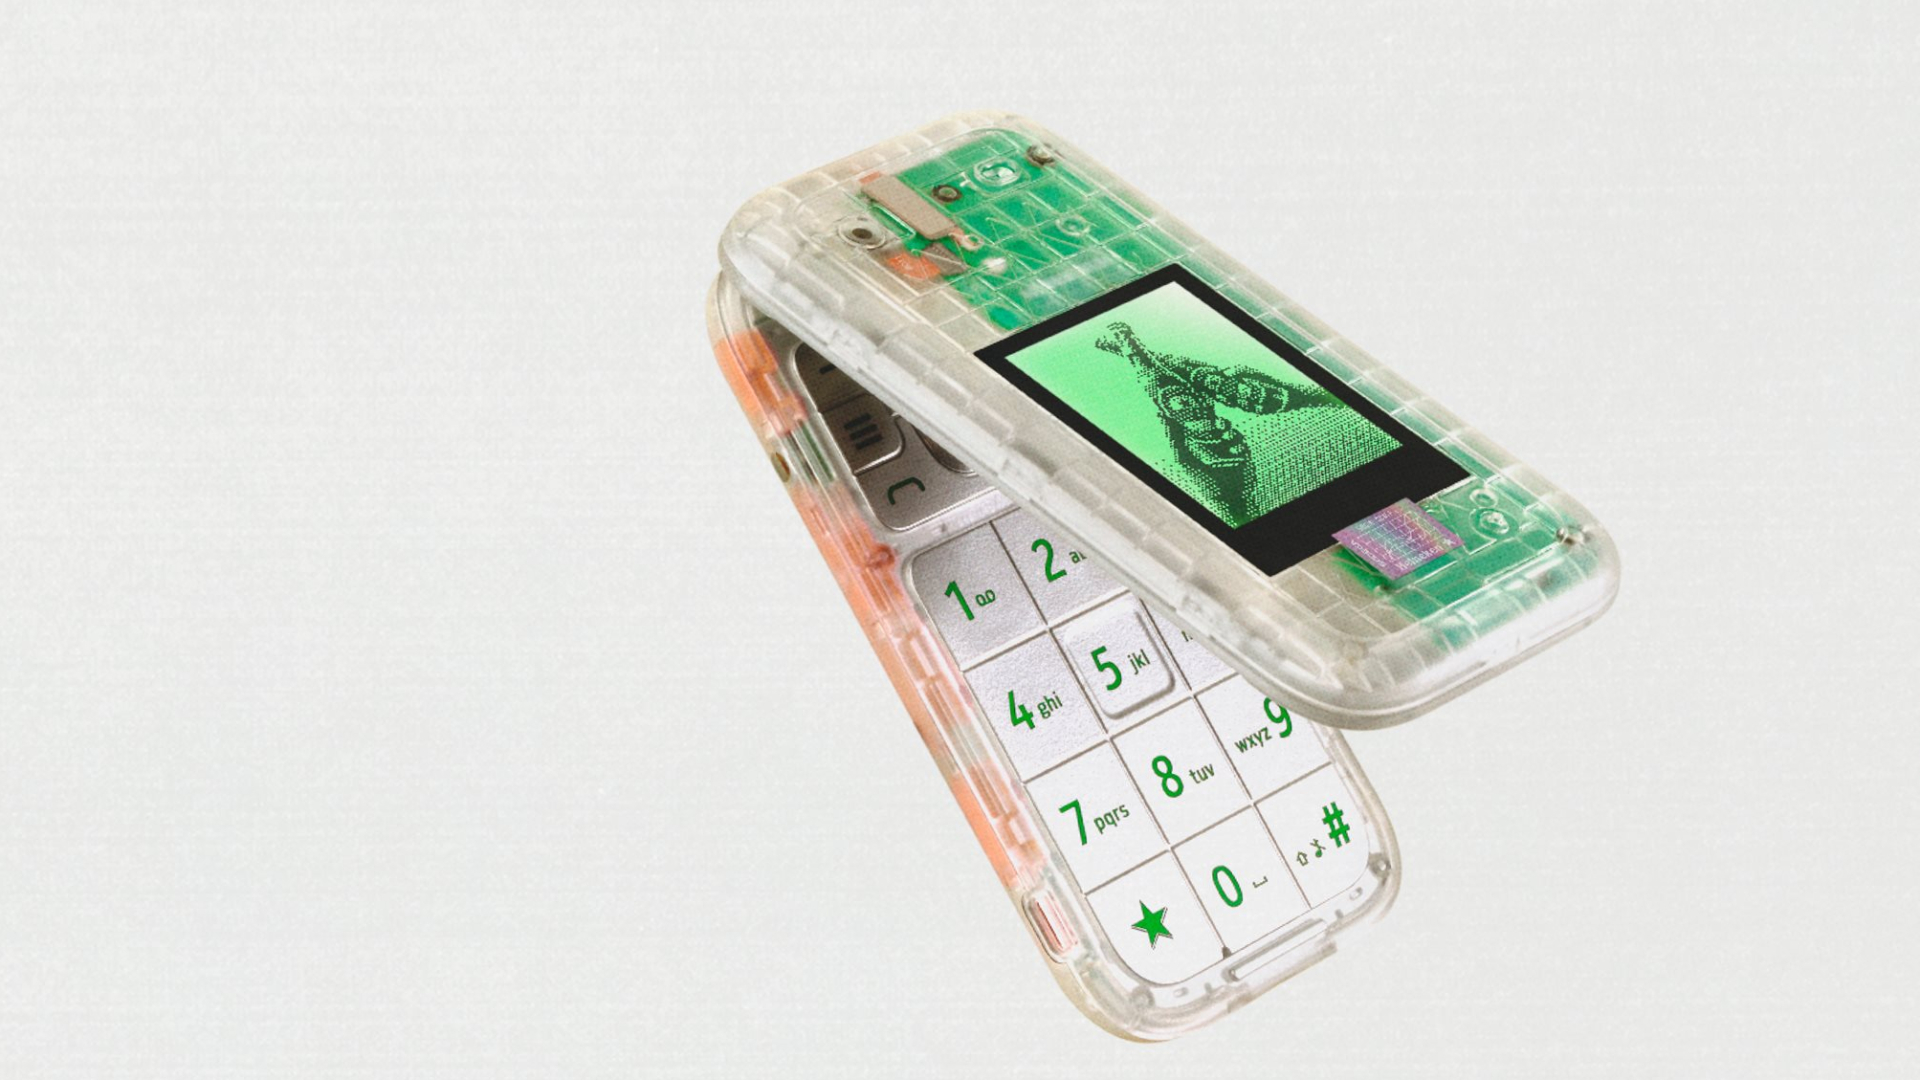 El Boring Phone es un teléfono plegable transparente y sin funciones que me transporta a mi infancia.